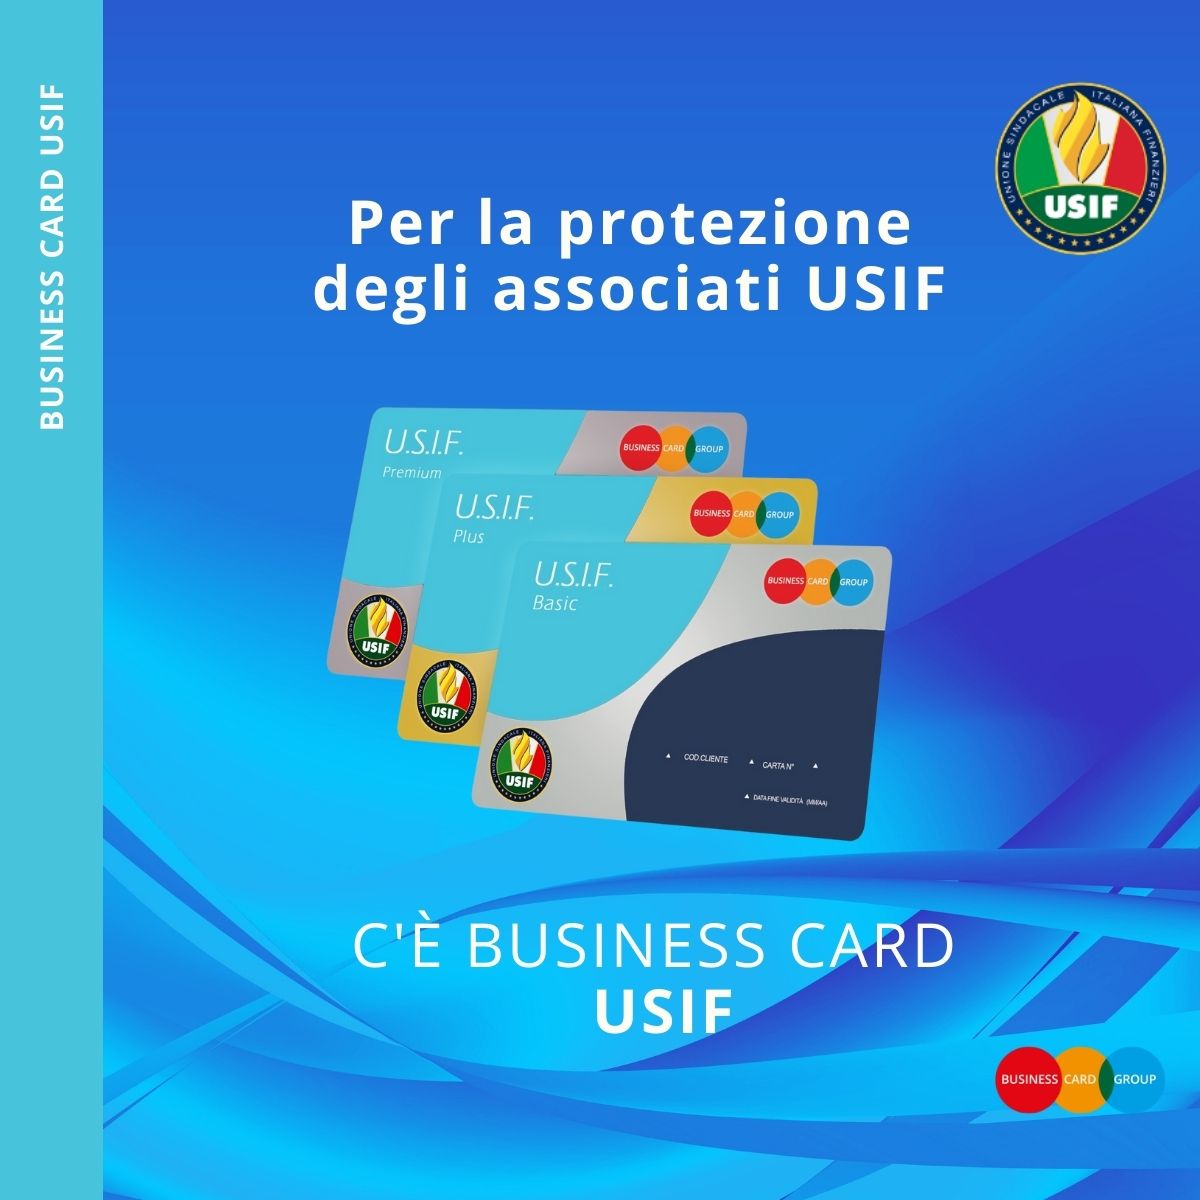 USIF: SIGLATA LA NUOVA CONVENZIONE CON BUSINESS CARD GROUP